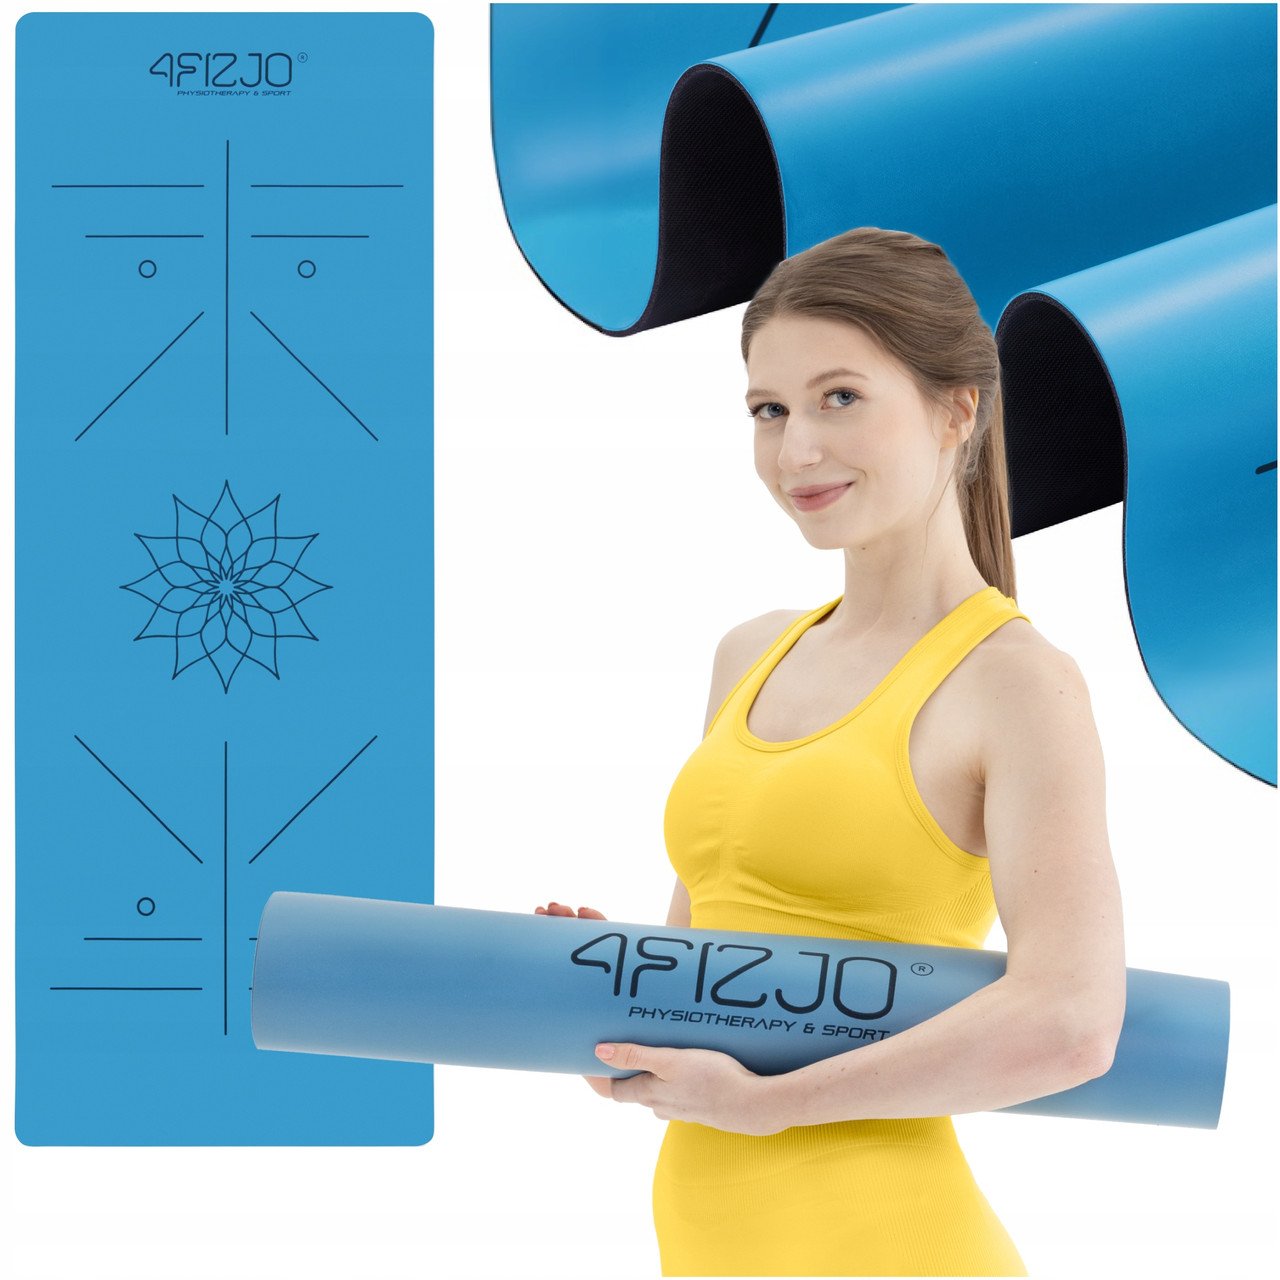 Килимок (мат) спортивний 4FIZJO PU 183 x 68 x 0.4 см для йоги та фітнесу 4FJ0588 Blue,  ml, 4FIZJO. Fitness Products. 